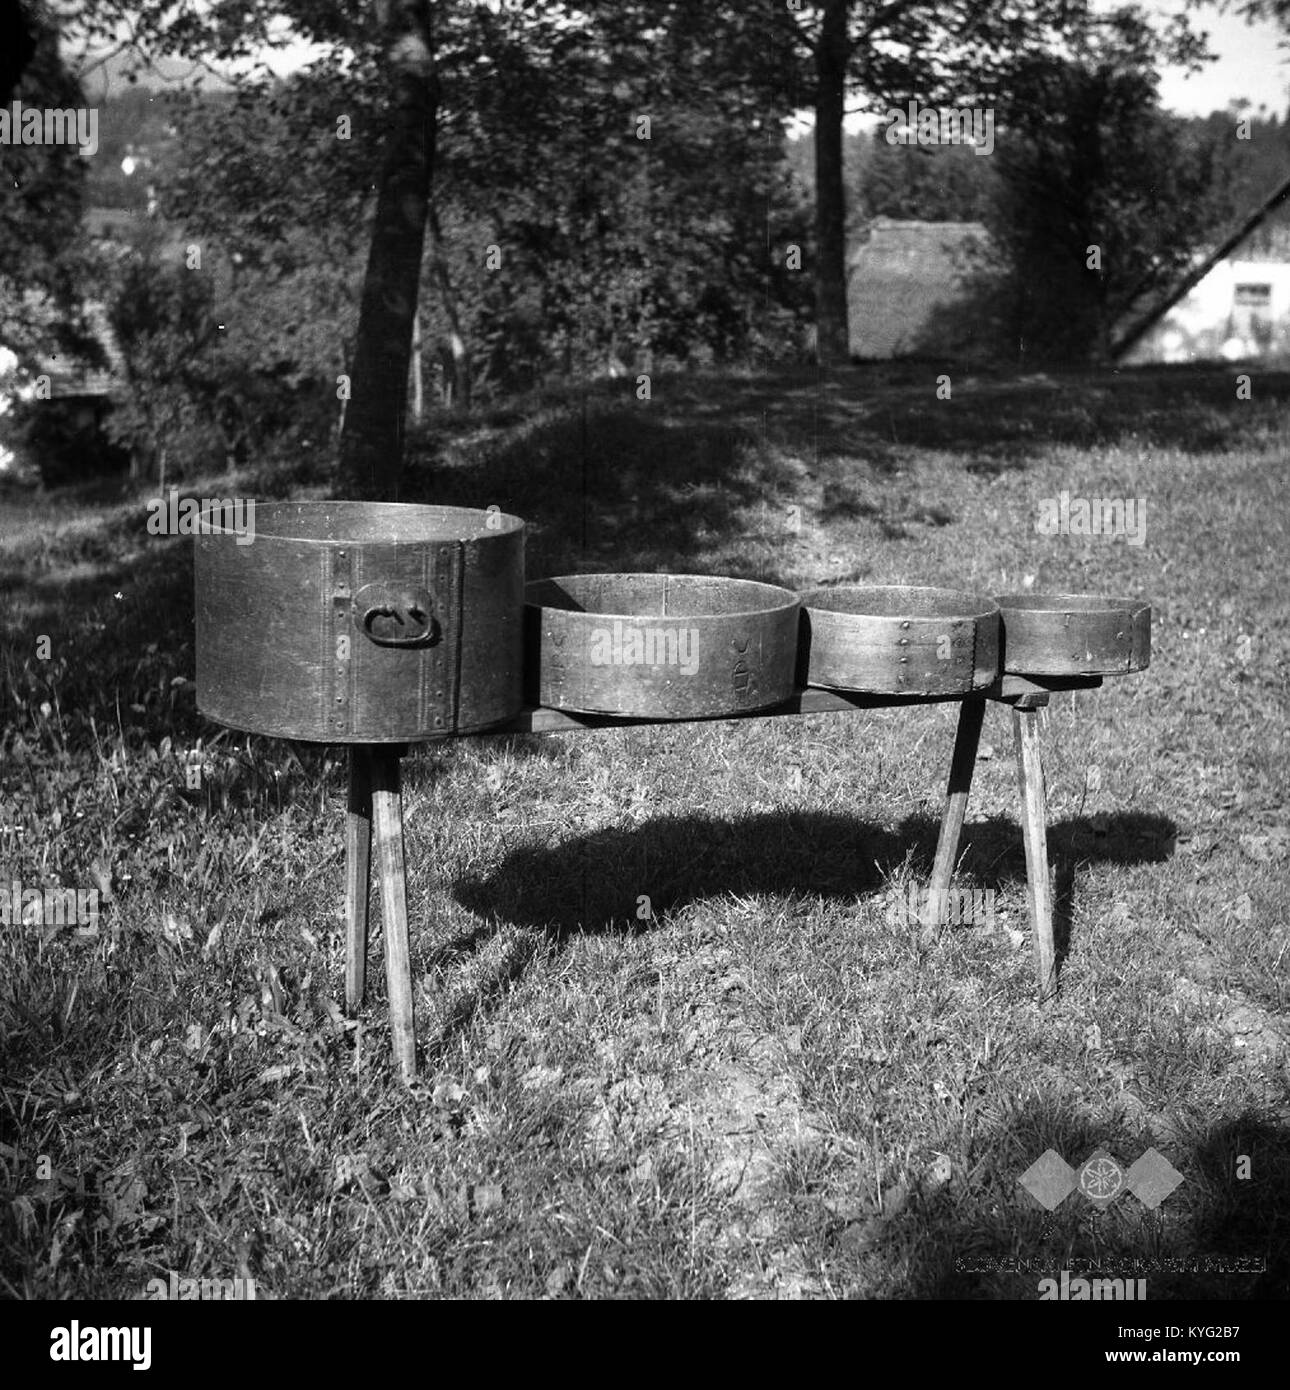 Posode za merjenje žita- mernik, znenk, polounica in kvart, Polje 1954  Stock Photo - Alamy